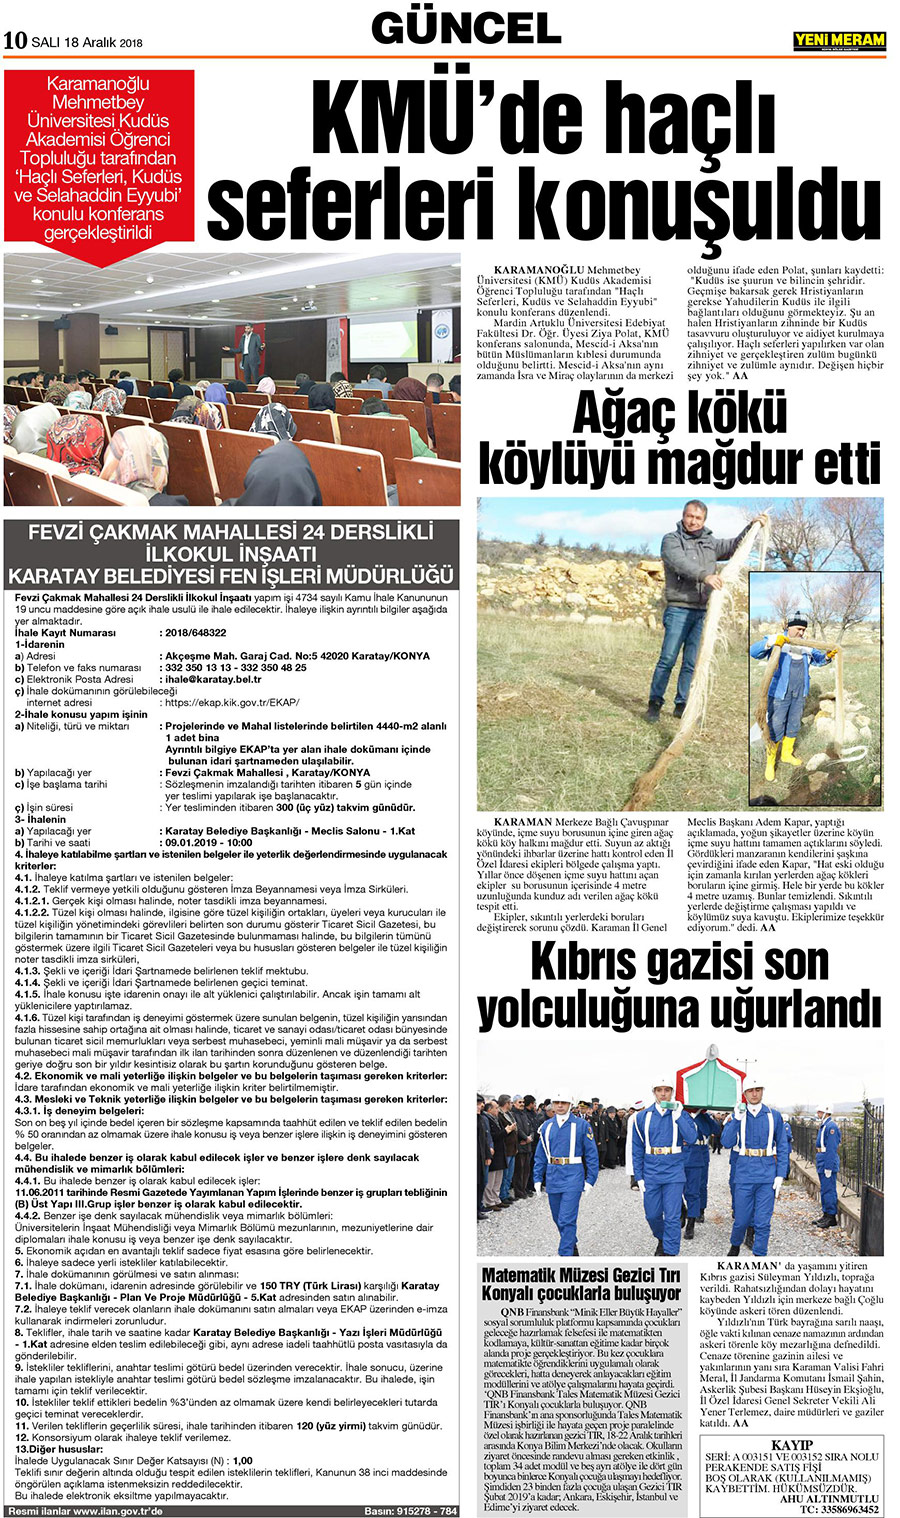 18 Aralık 2018 Yeni Meram Gazetesi